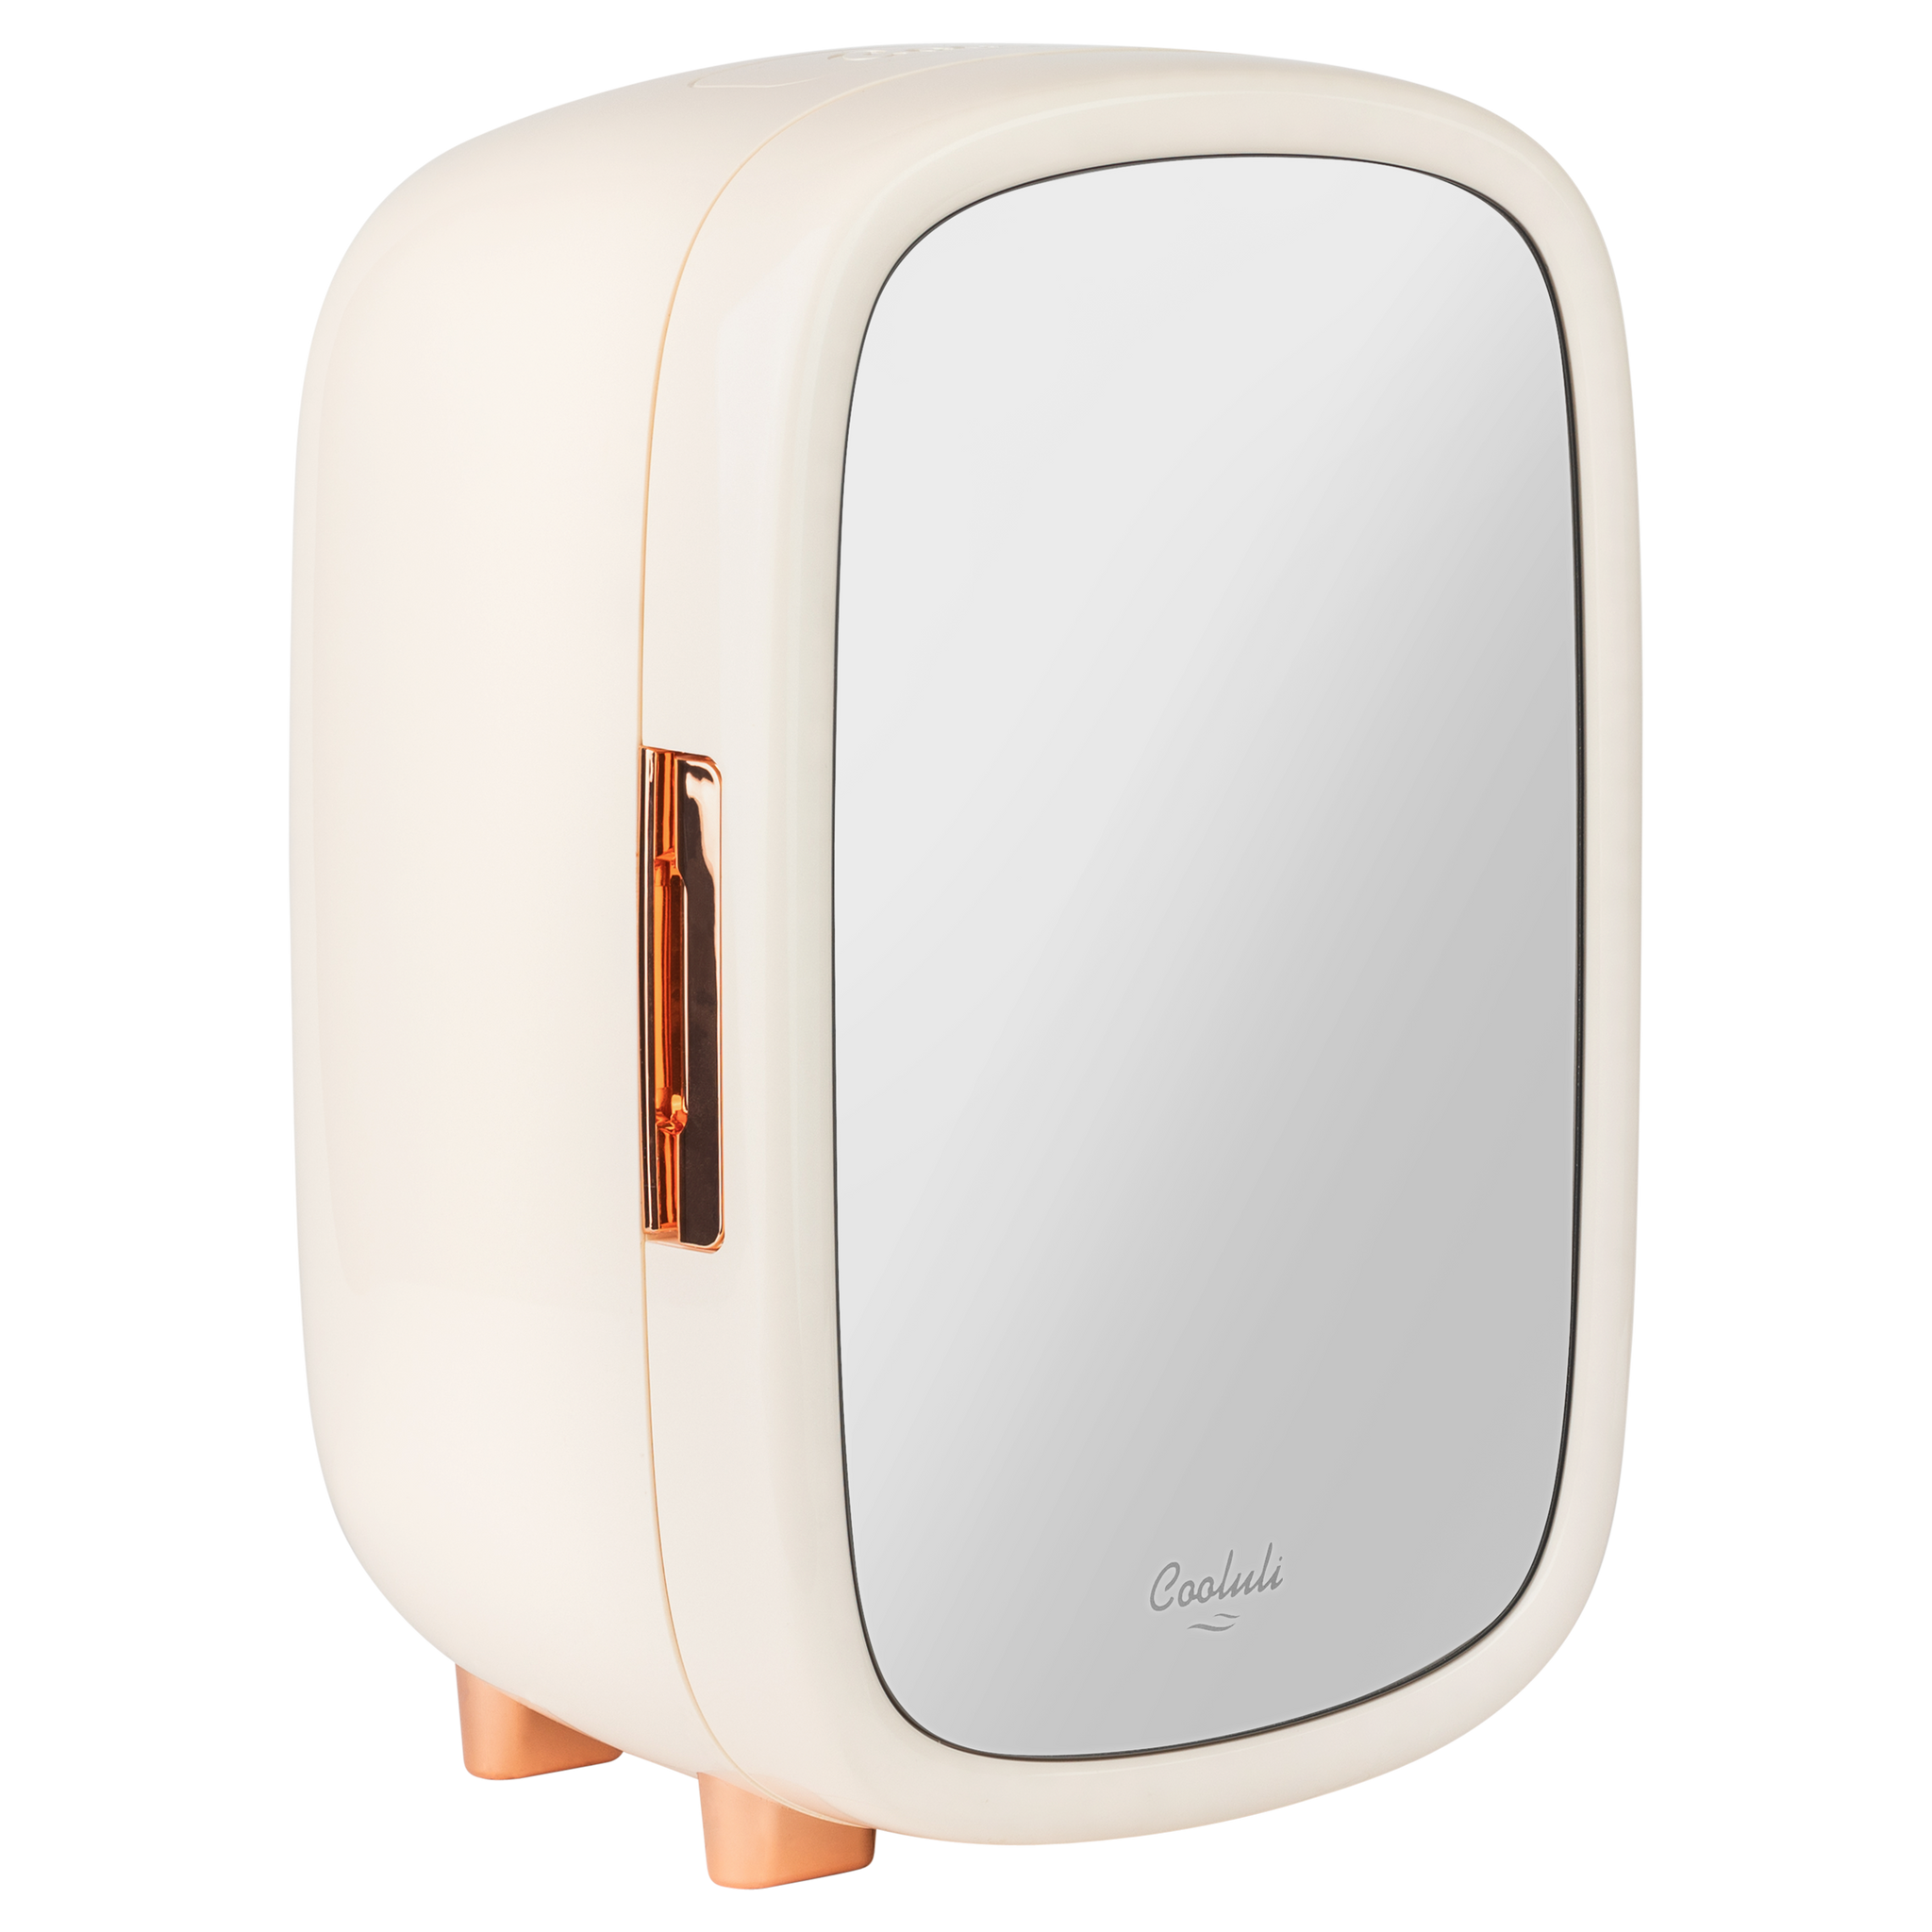 Réfrigérateur Olvy Skincare - Réfrigérateur Beauty - Avec Miroir et Siècle  des